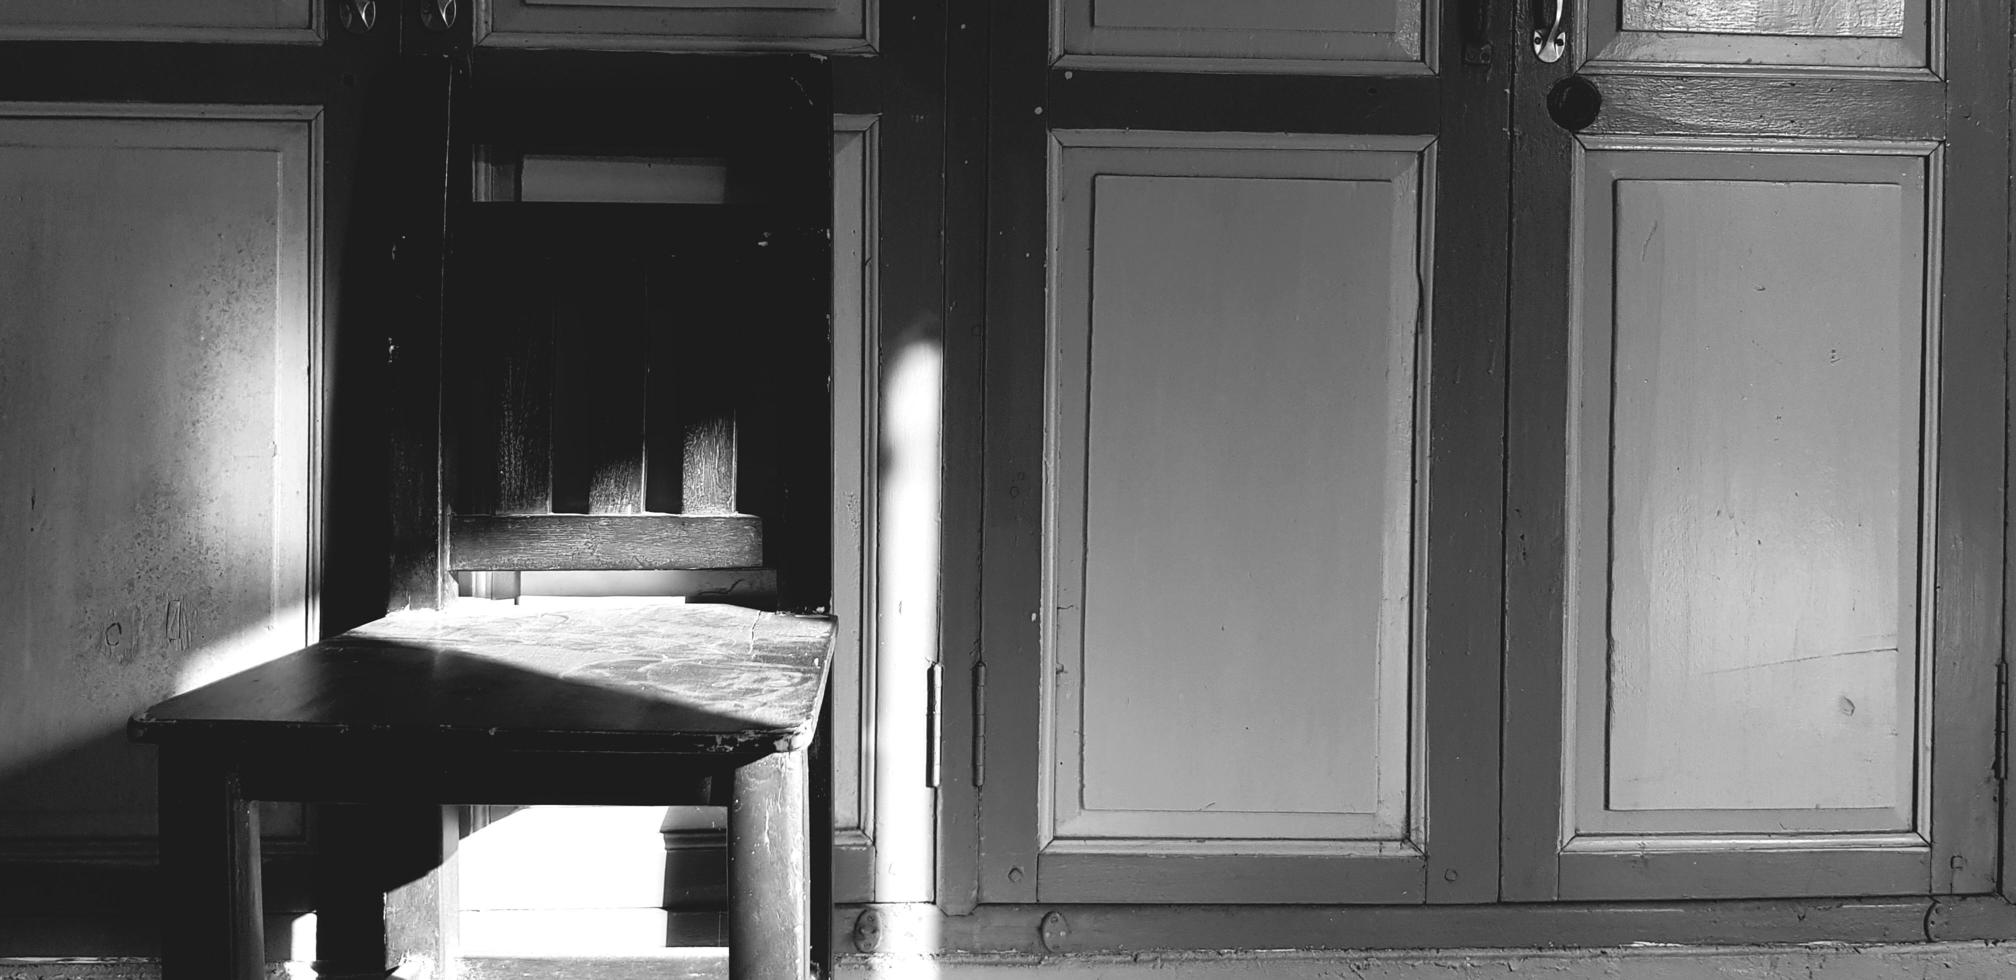 chaise en bois avec ombre de soleil sur porte vintage ou classique en ton noir et blanc ou monochrome. objet rétro avec lumière le matin. photo